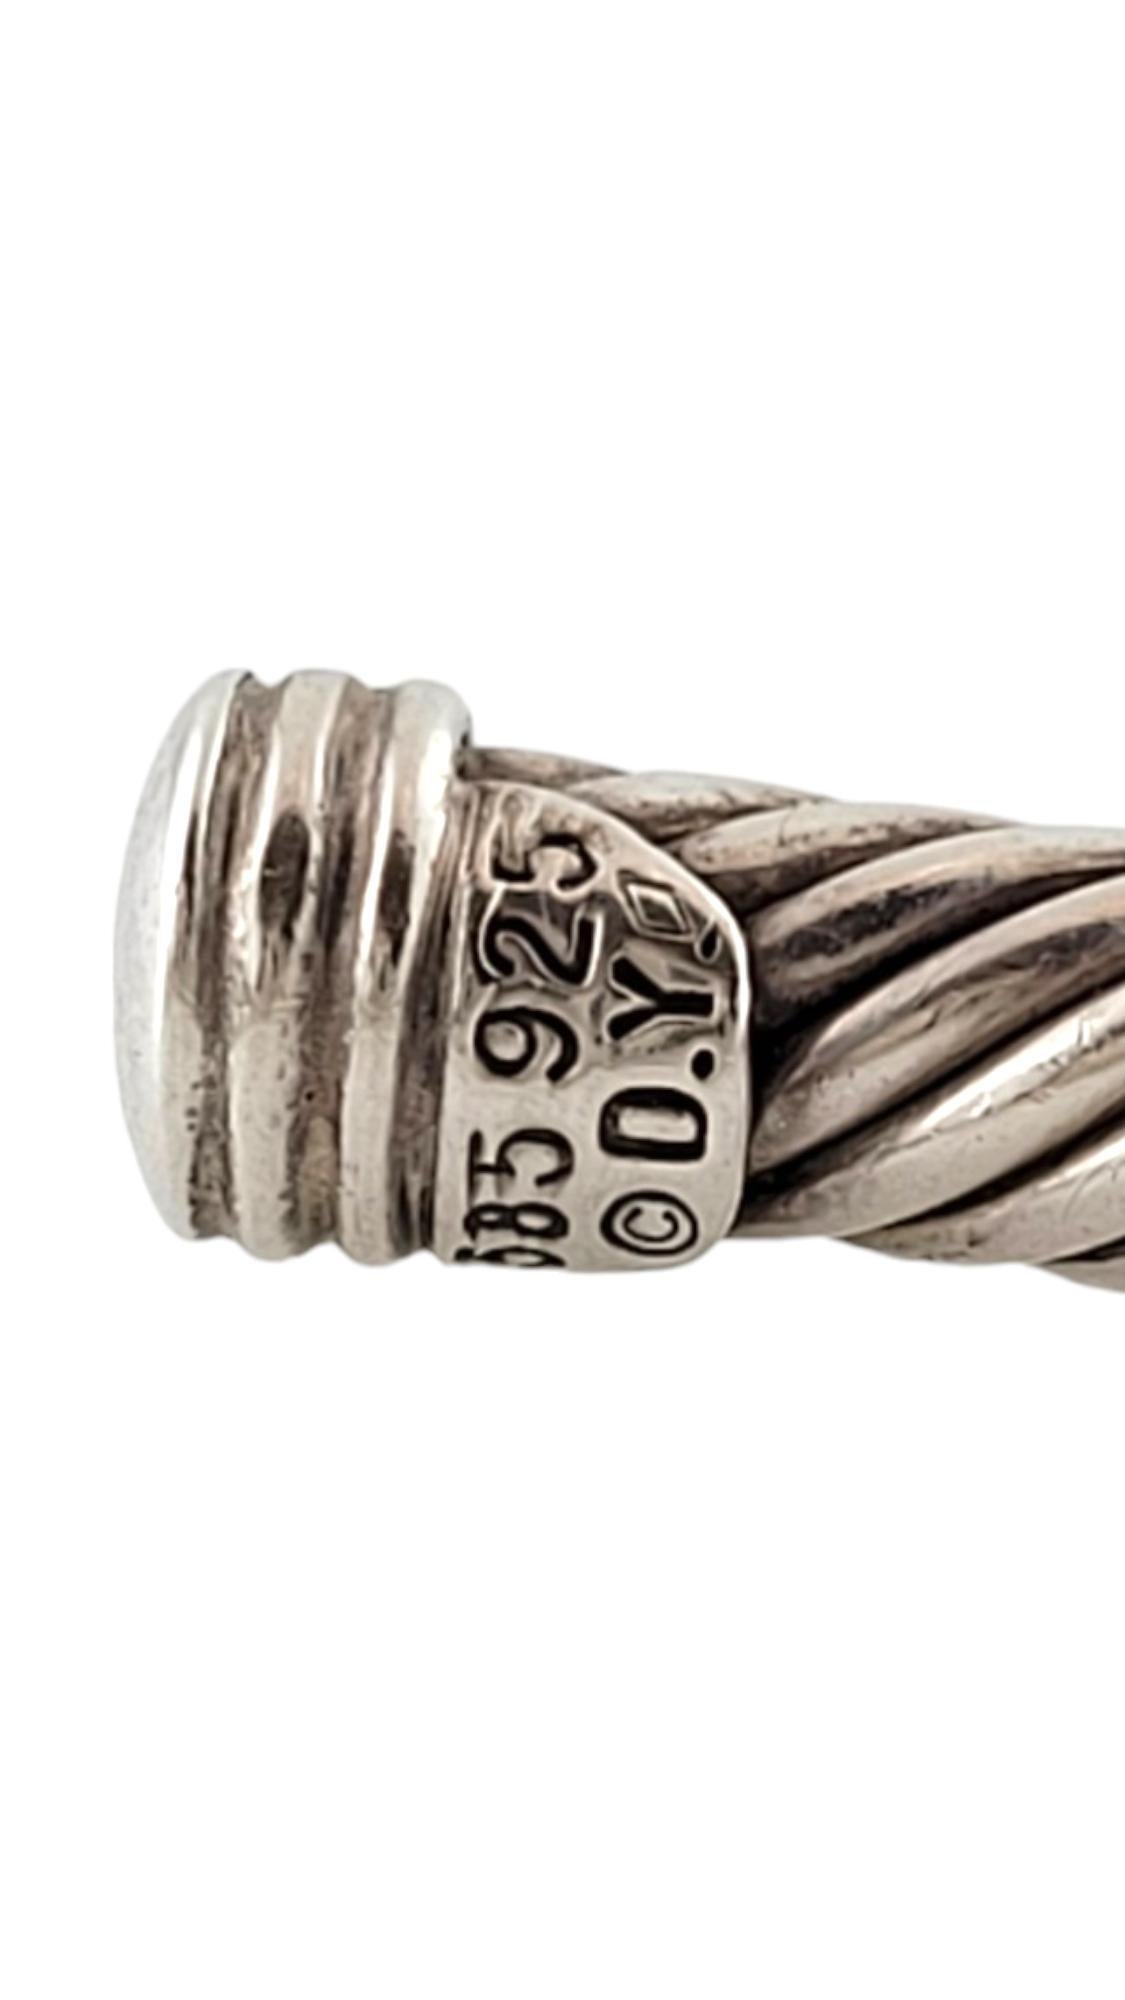 David Yurman 14K Yellow Gold & Sterling Silver Renaissance Cable Bracelet #17479 1